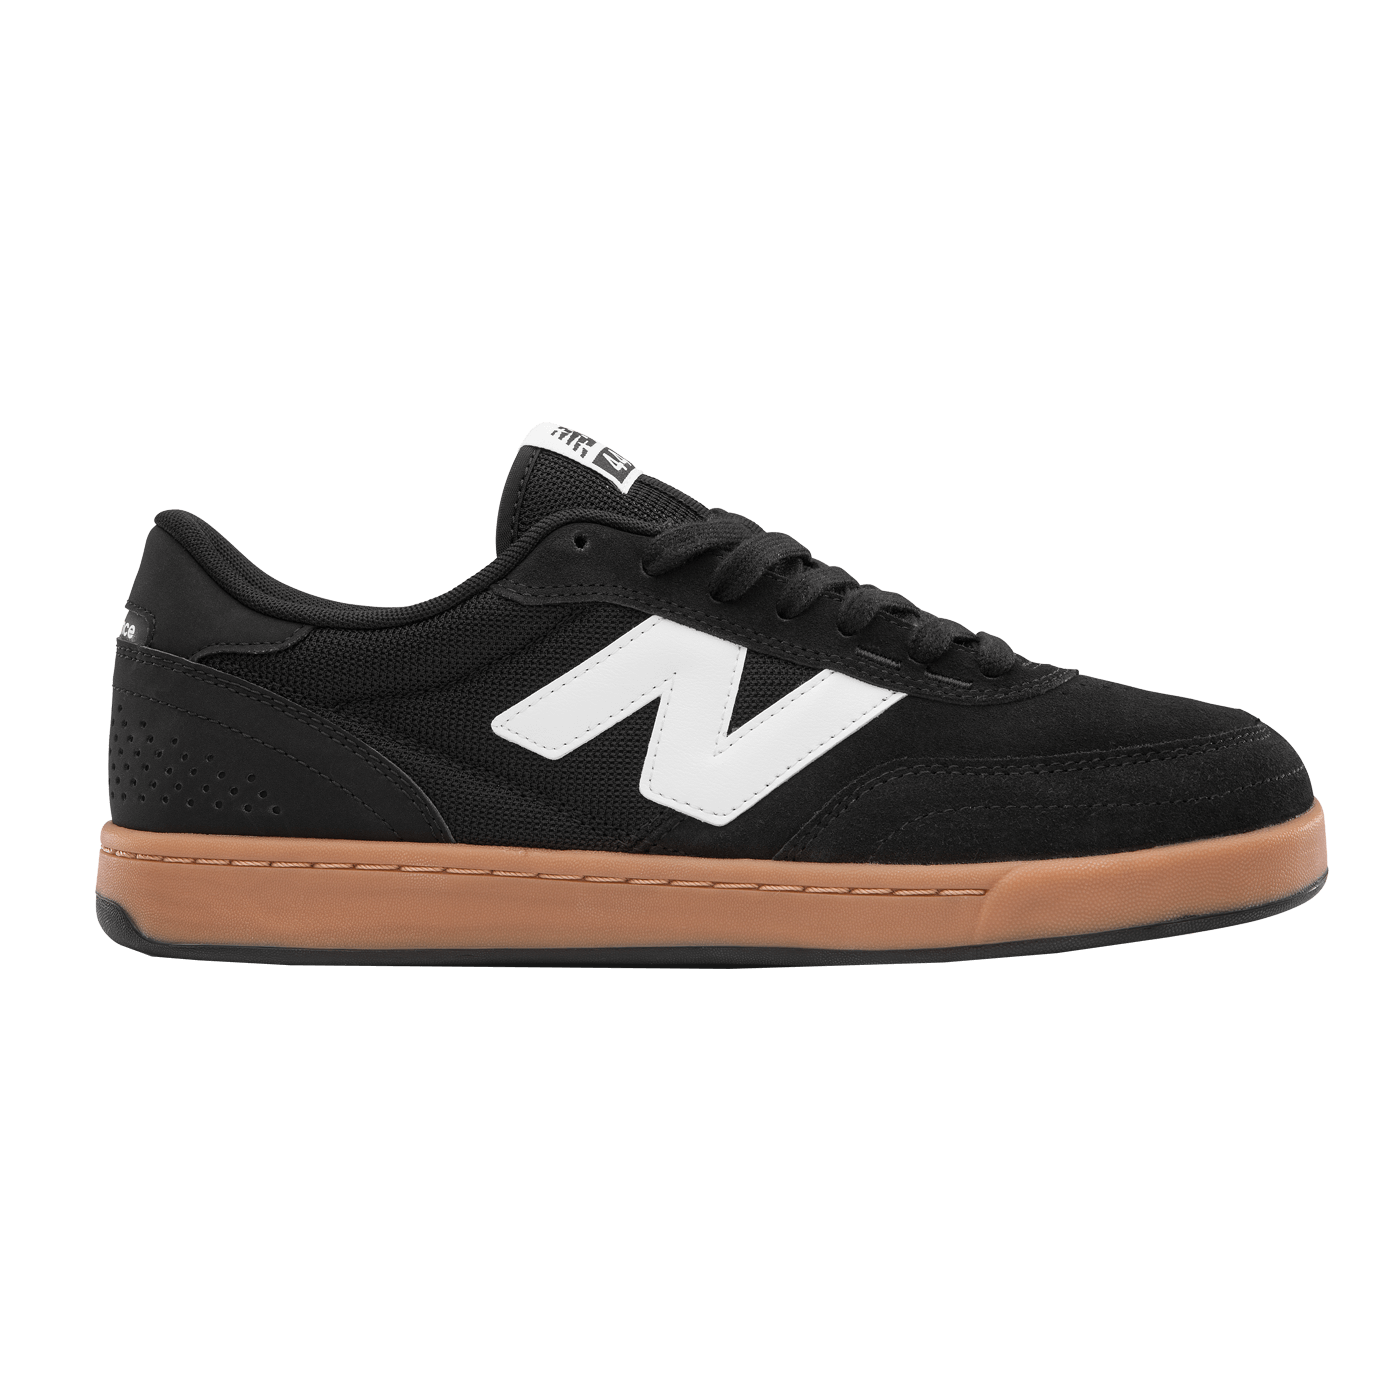 NM440BNG Shoe Black Gum